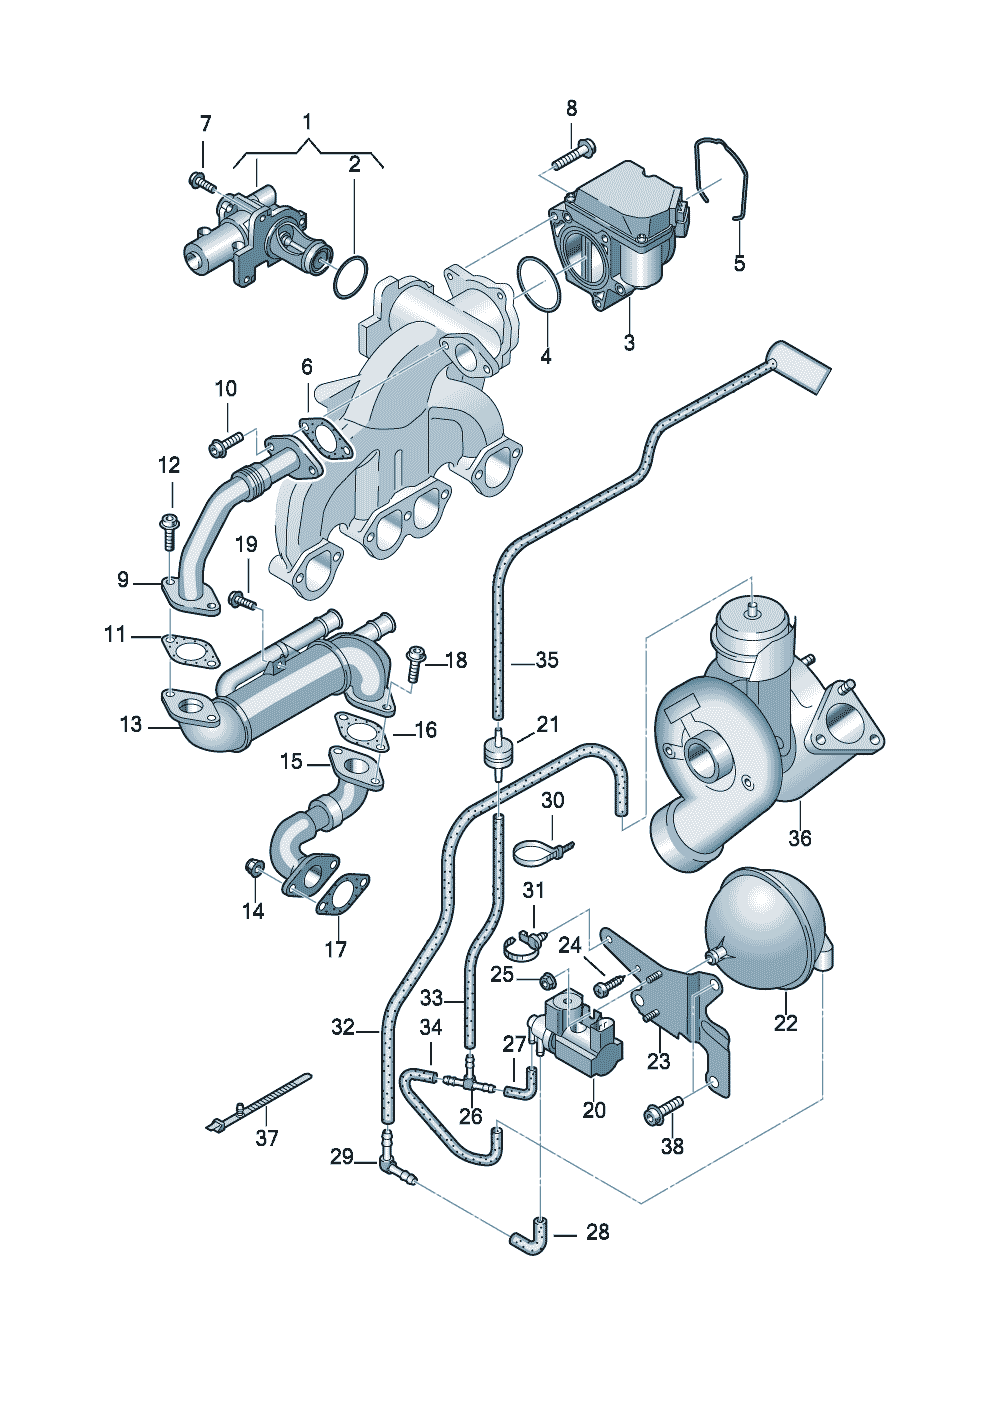 systeme de depressionRecyclage des gaz echappement 1,9l - Audi A4/Avant - a4